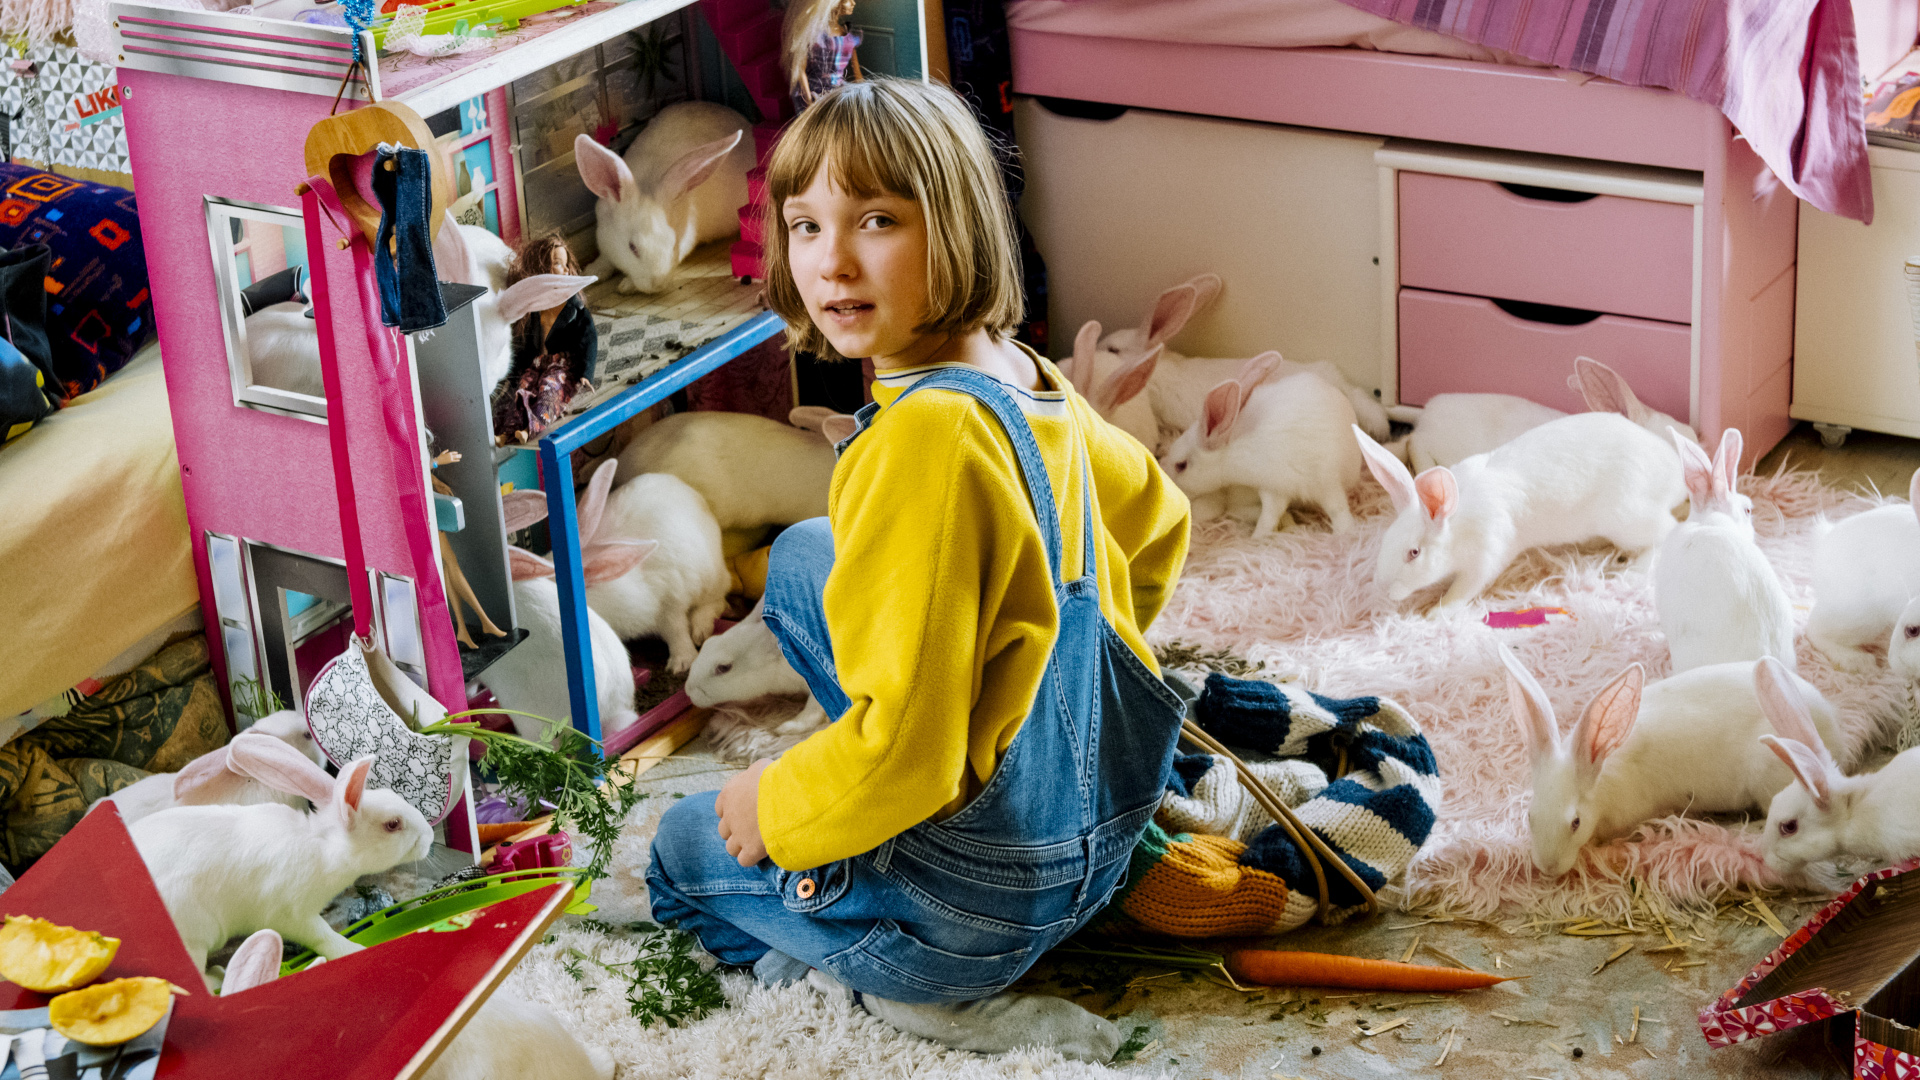 Filmstill aus Mein Lotta-Leben. Ein Mädchen sitzt auf dem Teppich ihres Kinderzimmers und spielt mit ihrem Puppenhaus.